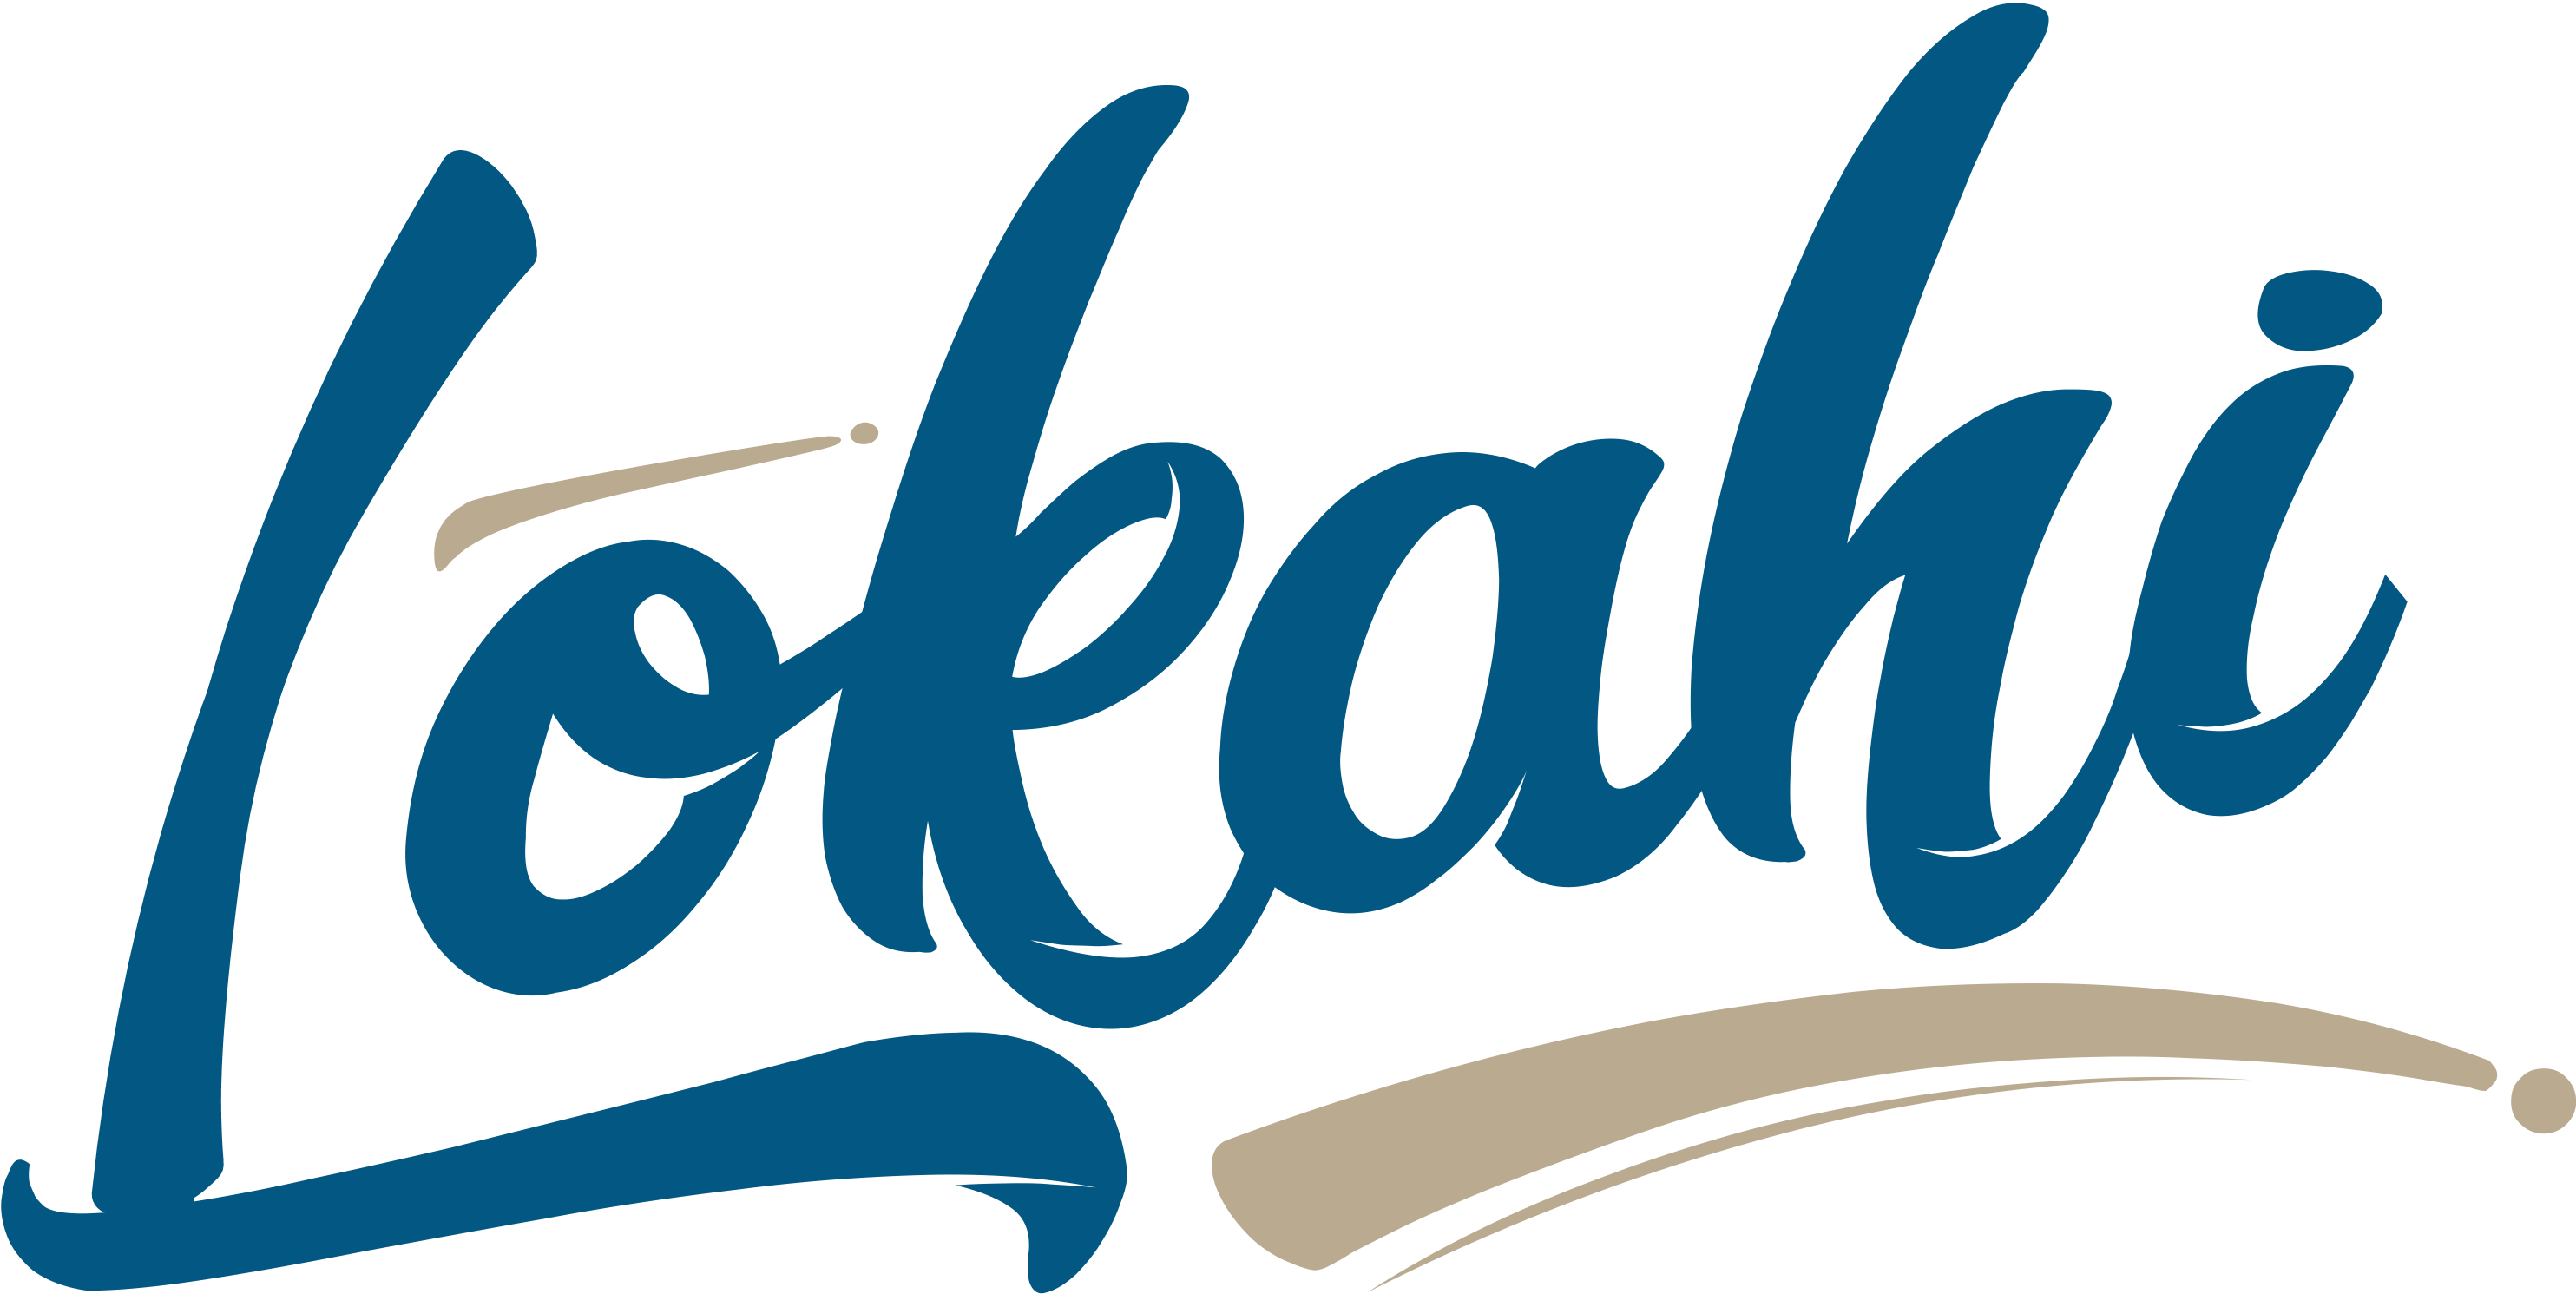 Lohaki logo